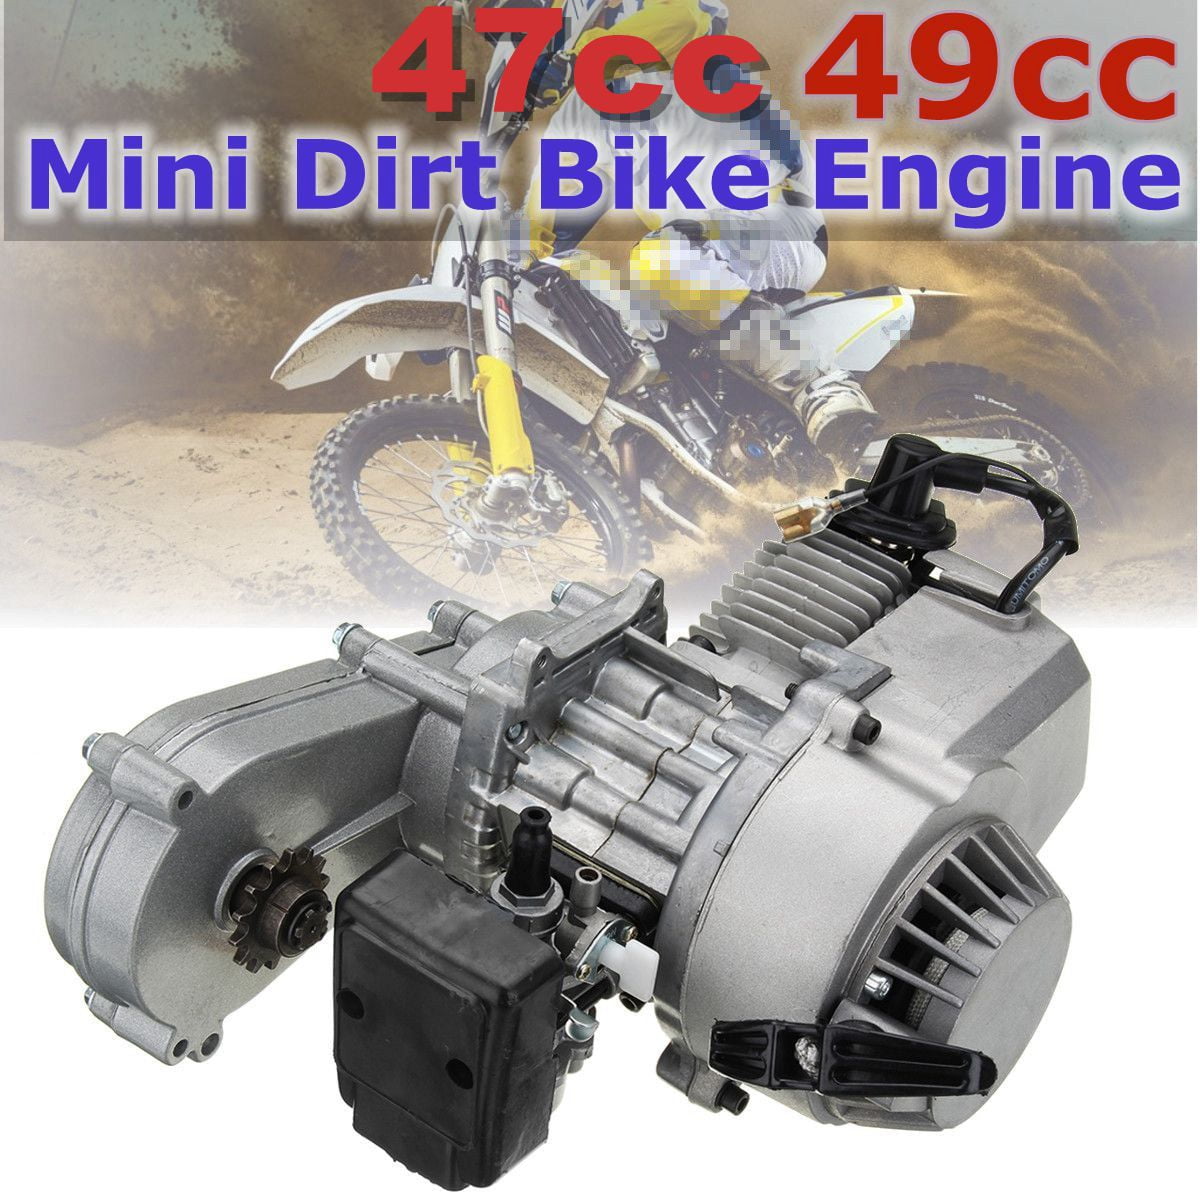 Metal Pull Start. New 2 Stroke 49cc Mini Dirt Bike Complete Engine Full Kit 